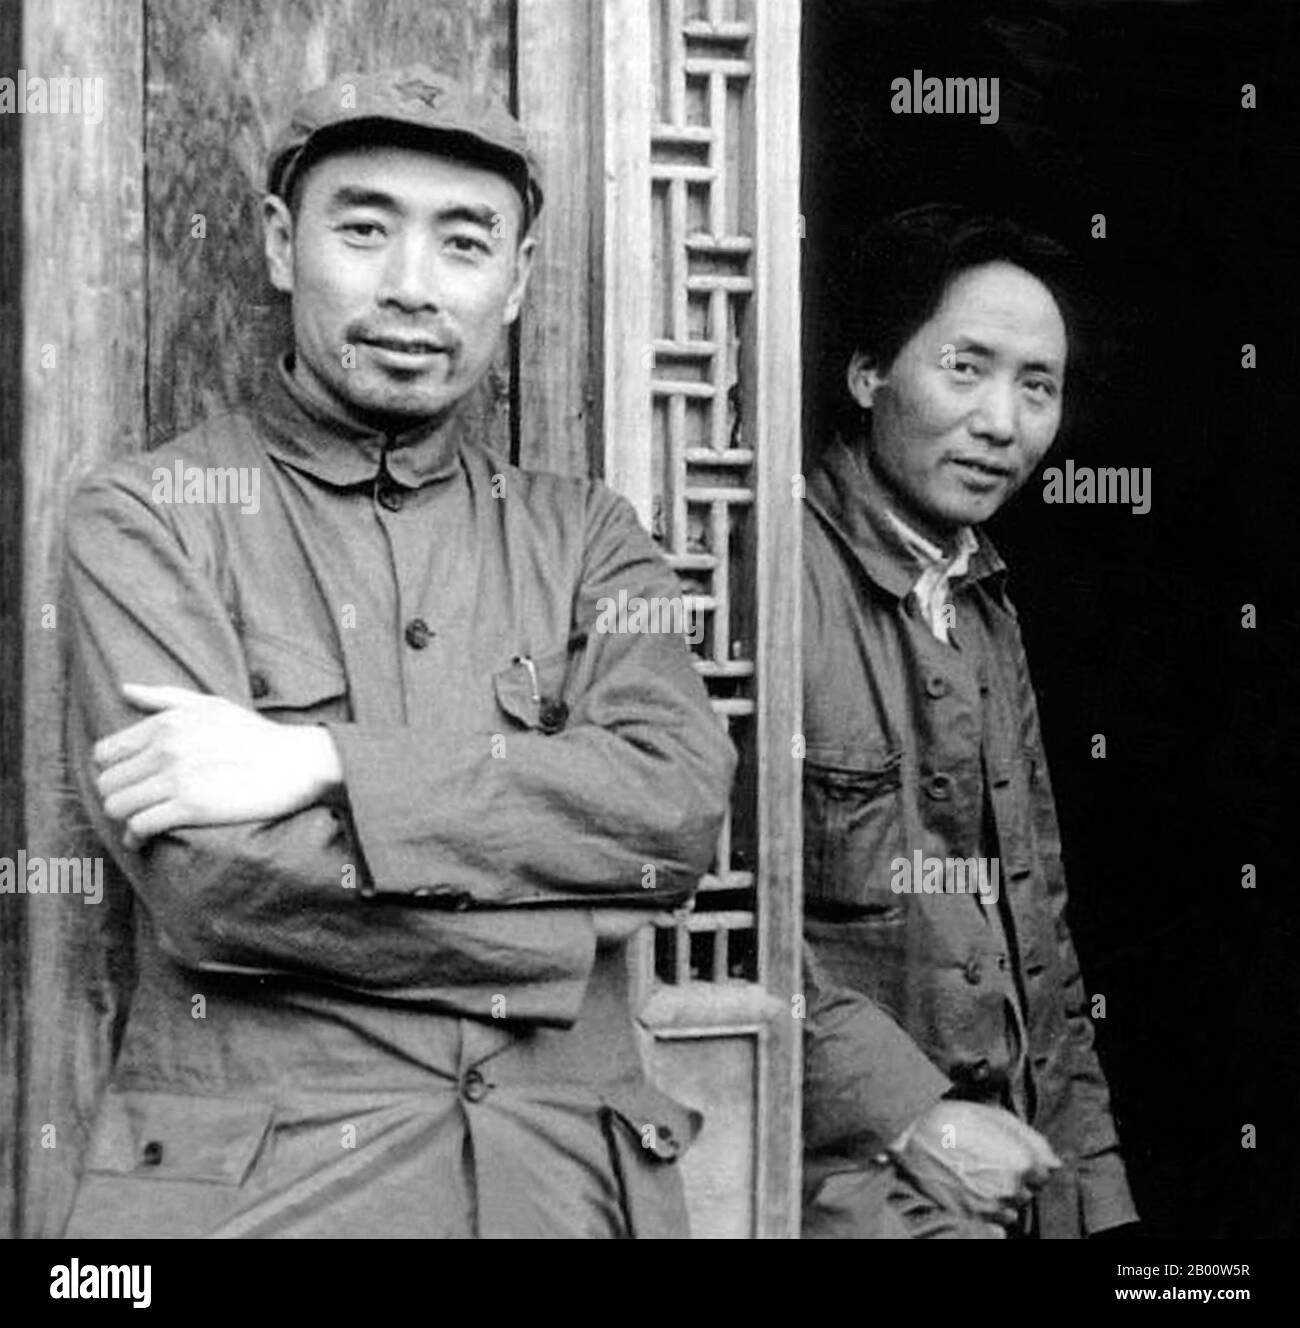 Cina: Rilassato Zhou Enlai (a sinistra) e Mao Zedong alla capitale comunista cinese di Yan'an, c.. 1936. Fotografia del giornalista statunitense Edgar Snow. Mao Zedong, anch'esso traslitterato come Mao TSE-Tung (26 dicembre 1893 – 9 settembre 1976), è stato un rivoluzionario comunista cinese, stratega della guerriglia, autore, teorico politico e leader della Rivoluzione cinese. Comunemente indicato come presidente Mao, è stato l'architetto della Repubblica popolare Cinese (PRC) dalla sua fondazione nel 1949, e ha mantenuto il controllo autoritario sulla nazione fino alla sua morte nel 1976. Foto Stock